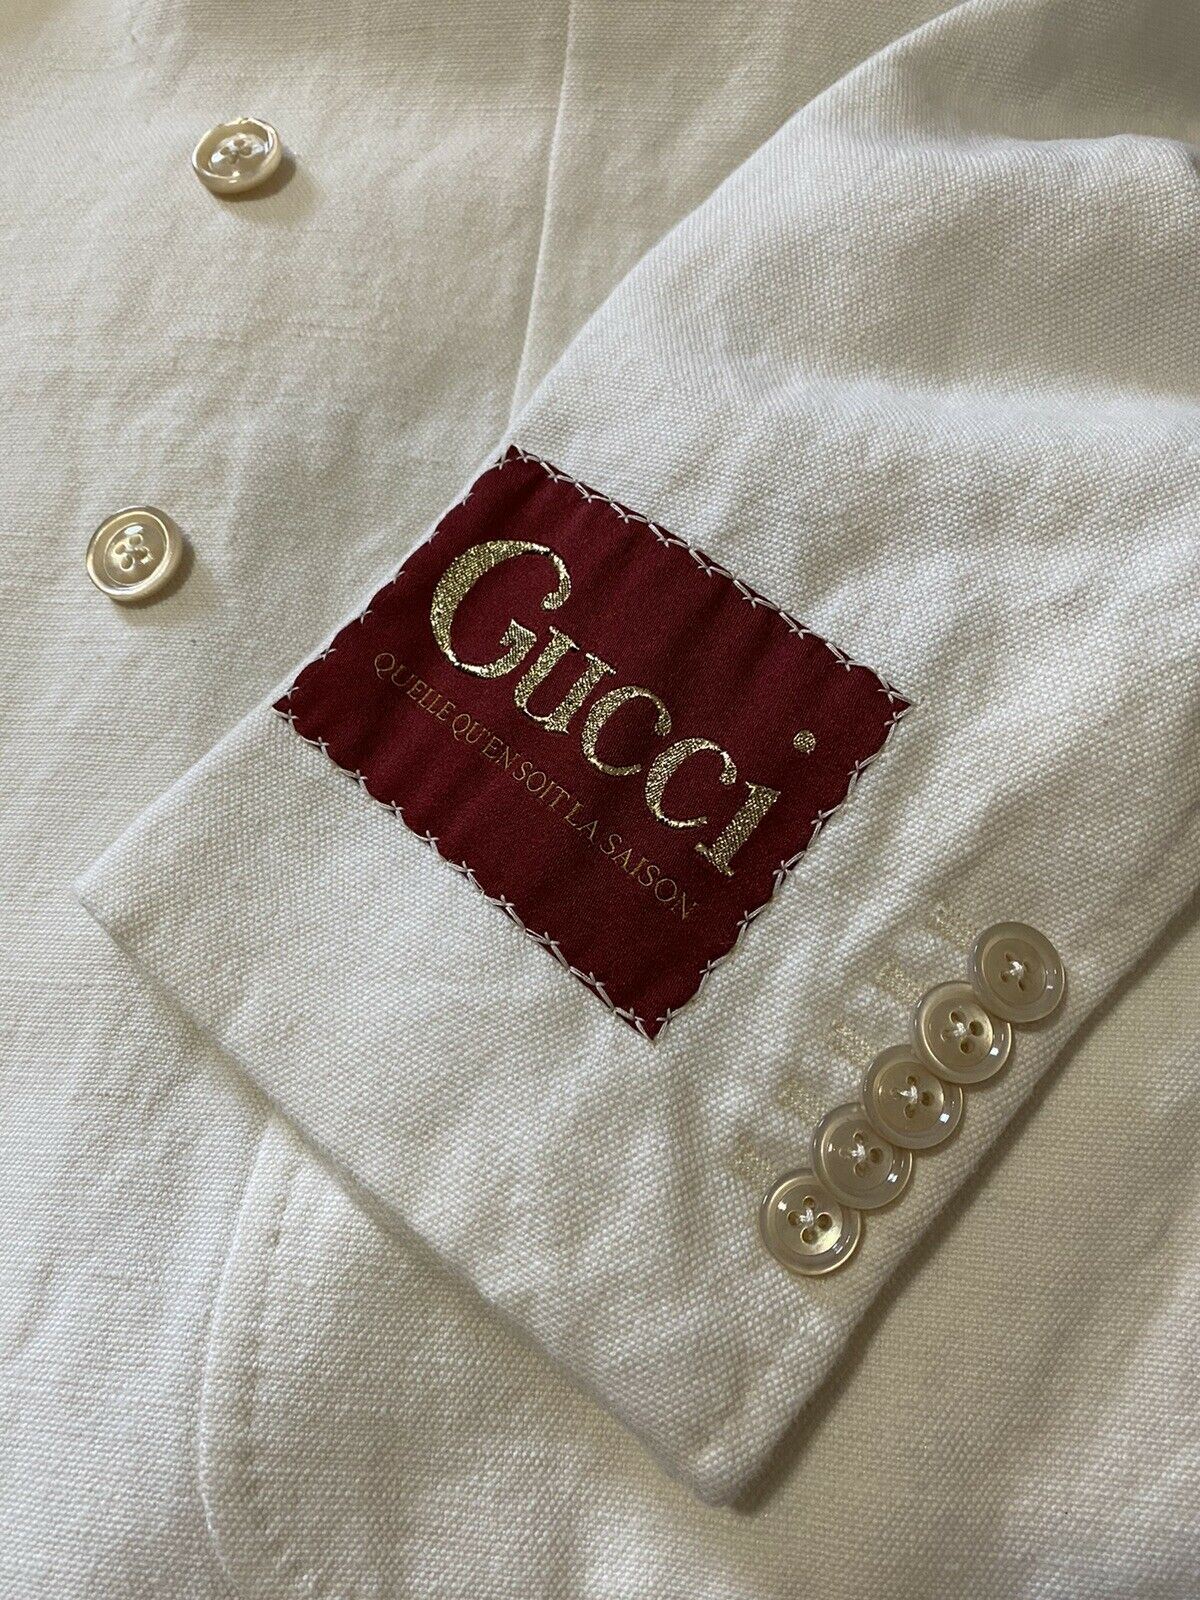 Neu mit Etikett: 4.800 $ Gucci Herren-Sportmantel aus Leinen/Baumwolle, Blazer, Weiß, 40R US/50R Eu